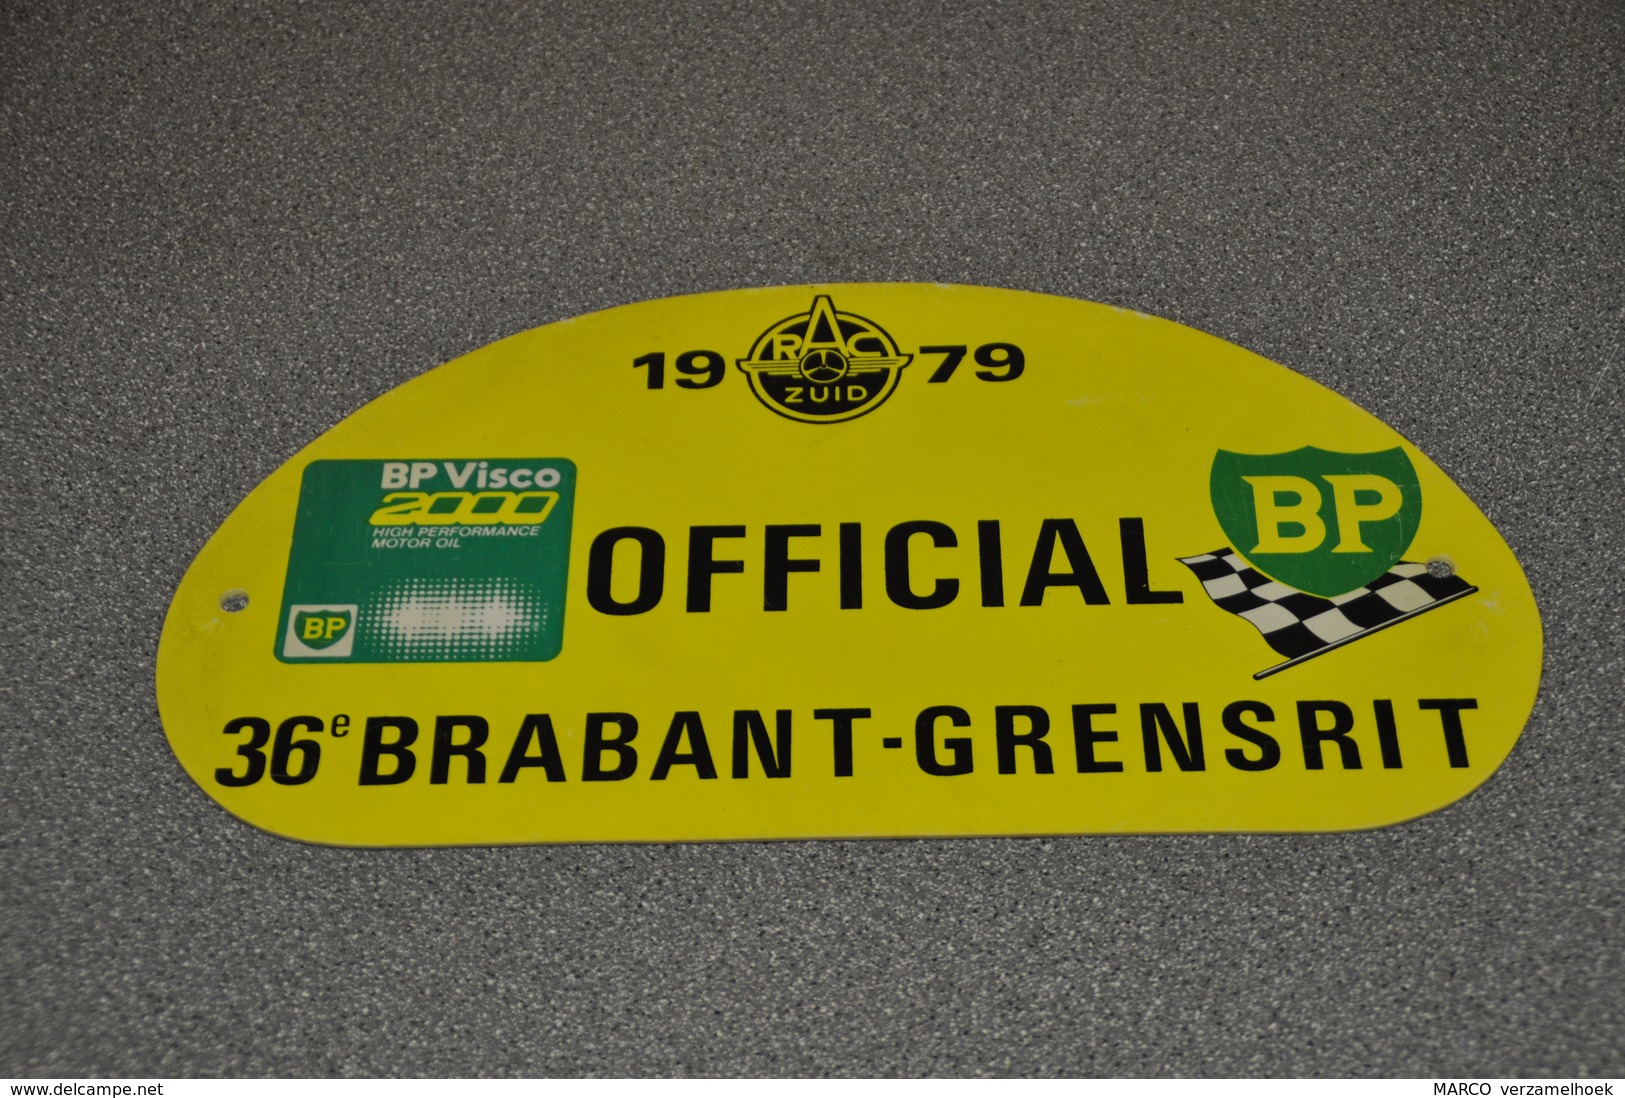 Rally Plaat-rallye Plaque Plastic: 36e Brabant-grensrit OFFICIAL 1979 RAC-zuid BP - Plaques De Rallye